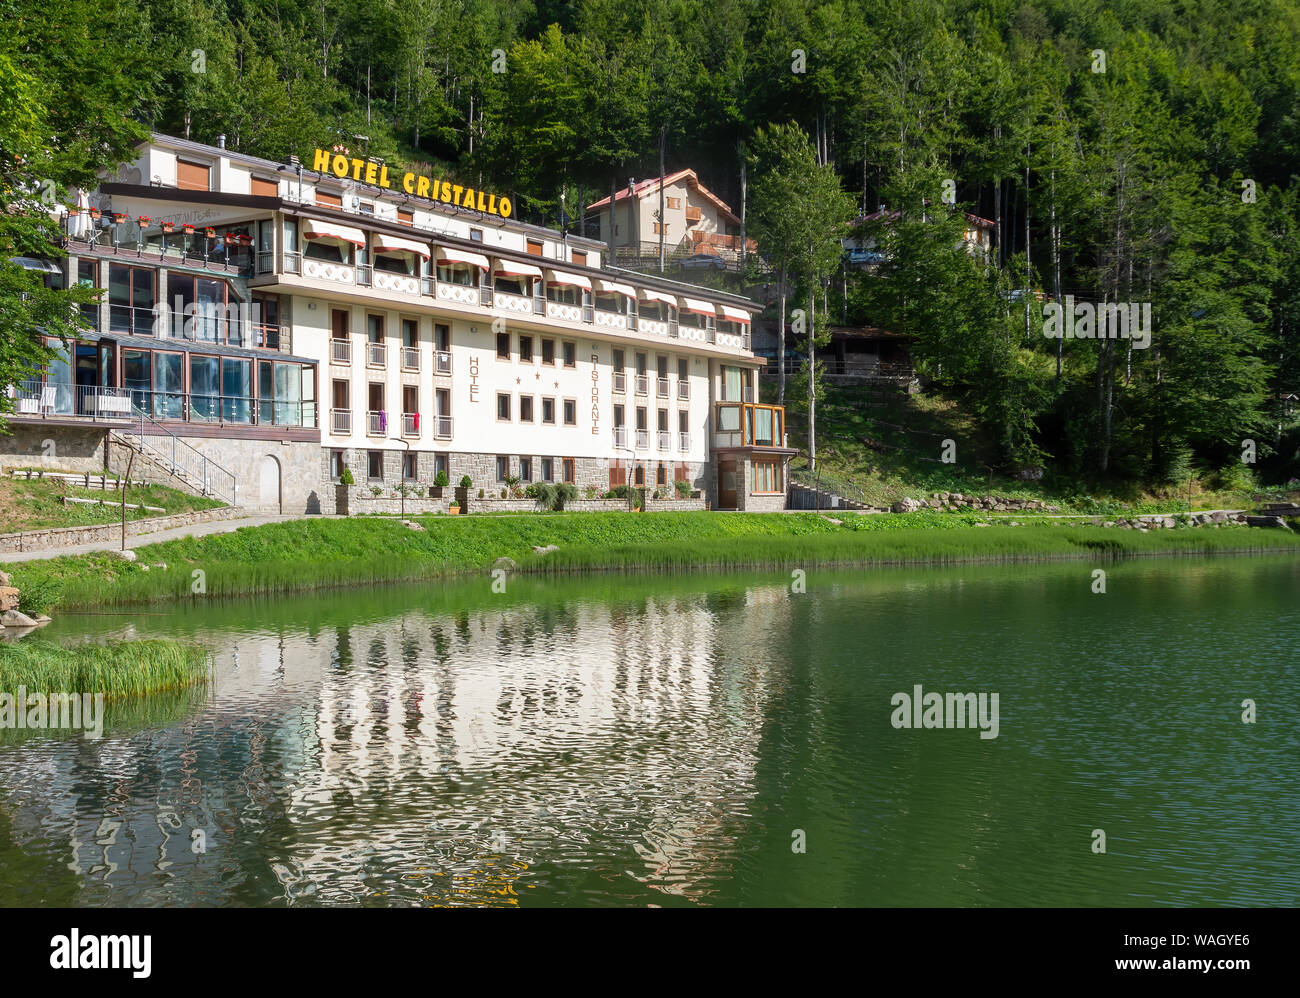 CERRETO LAGHI, Italien - 11 AUGUST 2019: in der Nähe von Cerreto Pass in den Apennin, das Gebiet ist als Skigebiet bekannt. Hier das Cristallo Hotel und den See Stockfoto